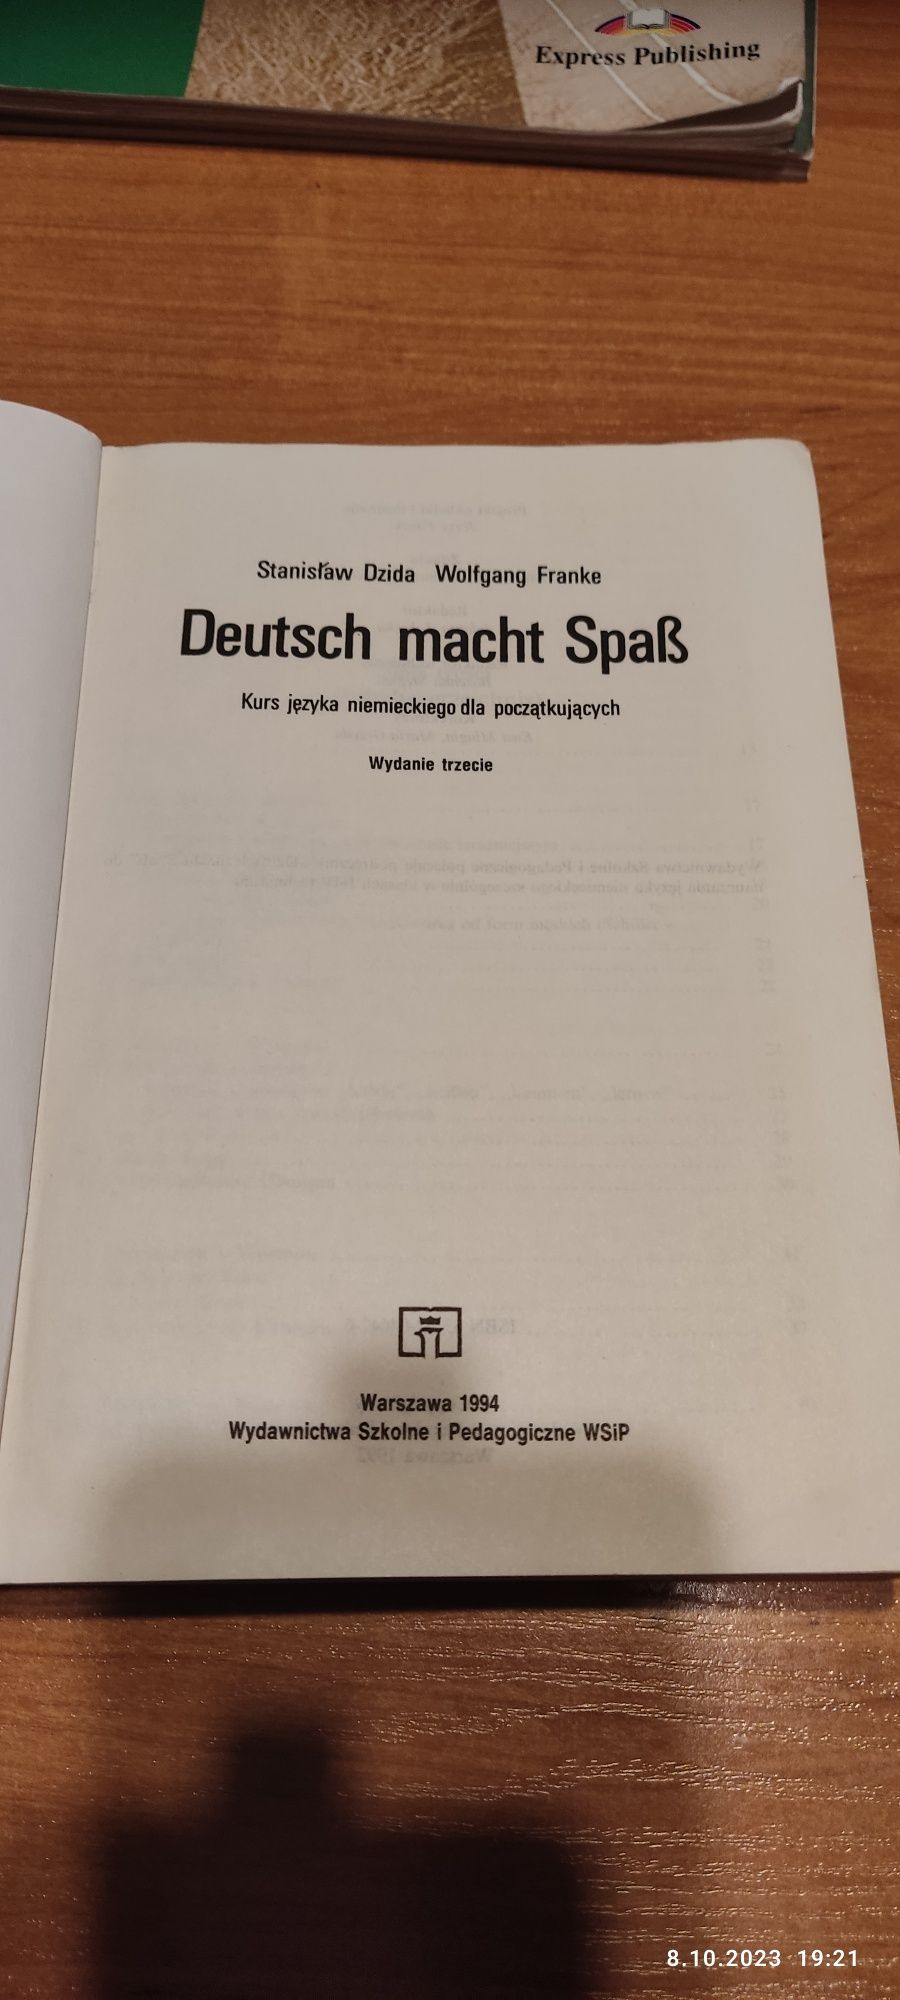 Deutsch macht Spab
Autor: S. Dzida